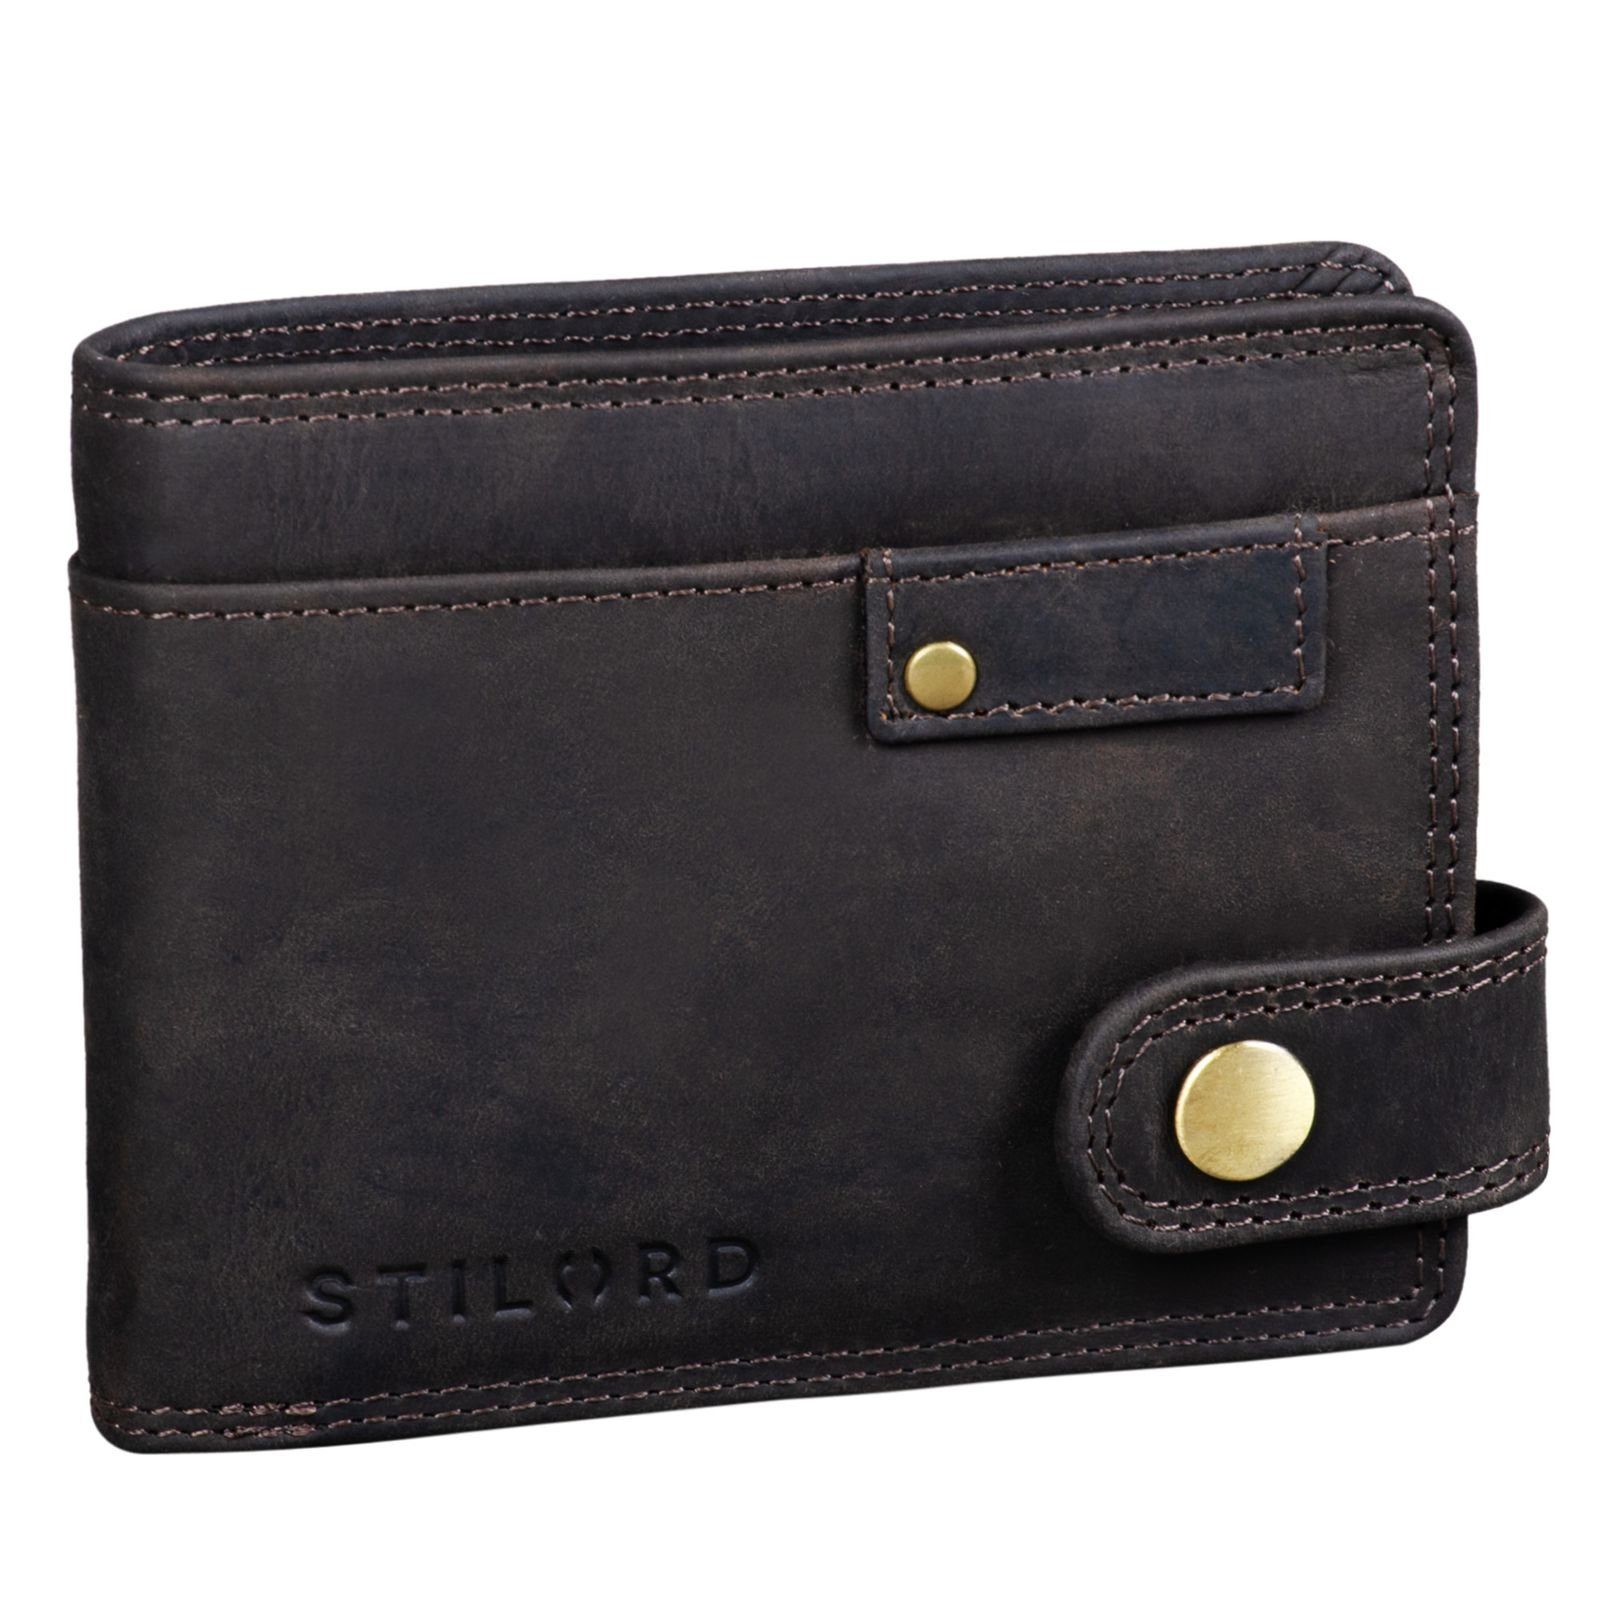 Herren braun NFC und STILORD "Finley" dunkel RFID Geldbörse - Geldbörse Leder